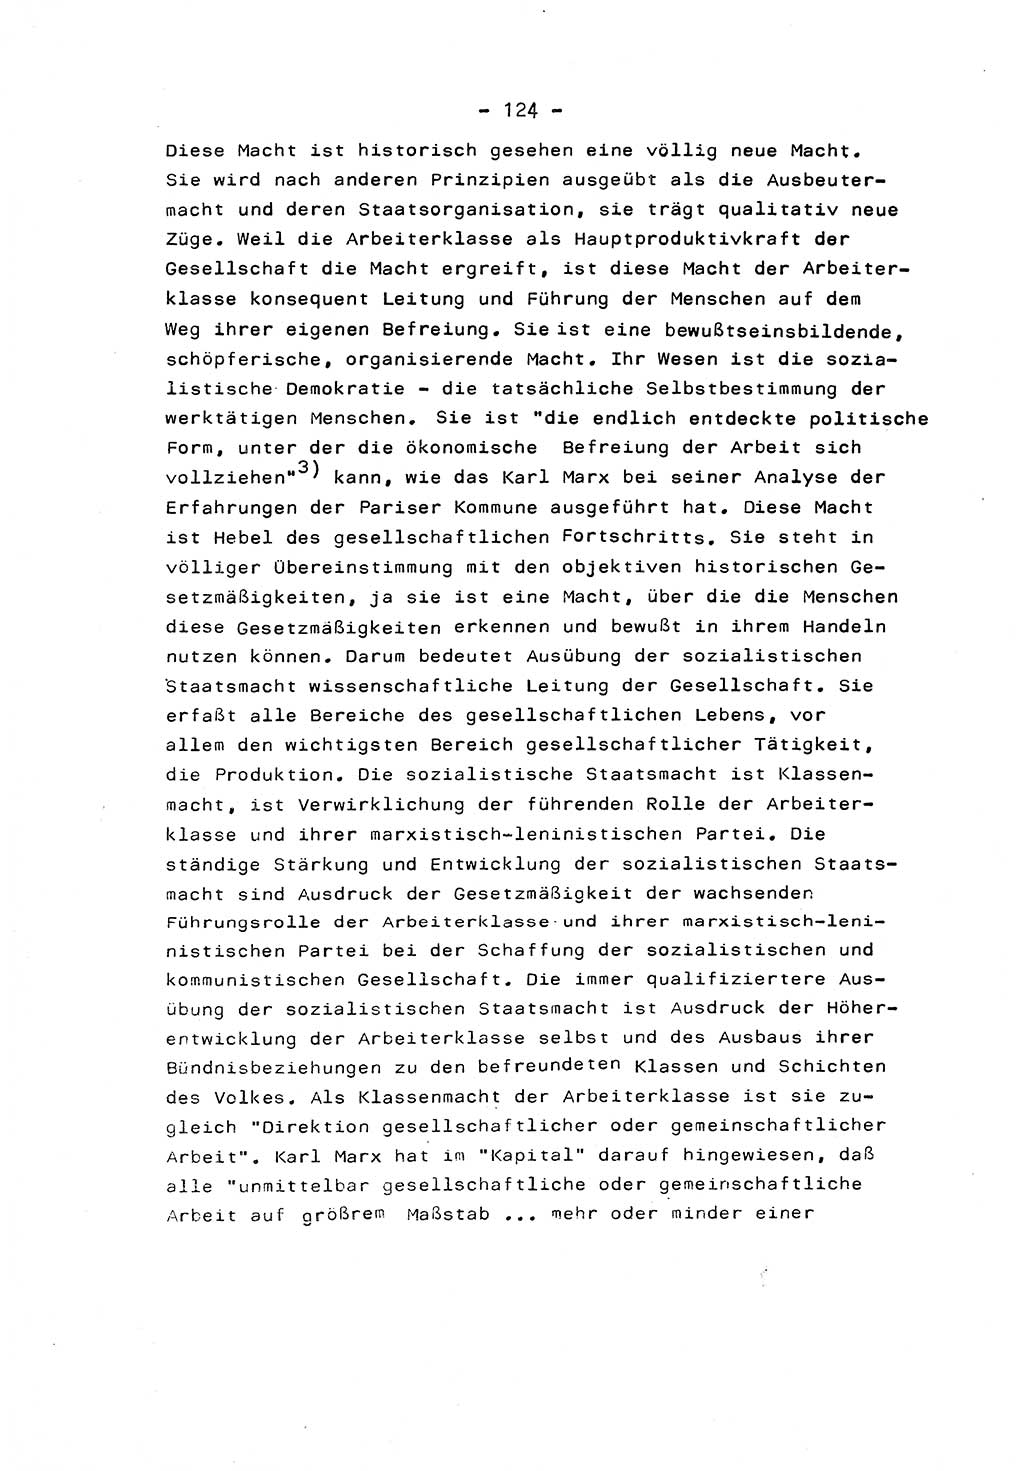 Marxistisch-leninistische Staats- und Rechtstheorie [Deutsche Demokratische Republik (DDR)] 1975, Seite 124 (ML St.-R.-Th. DDR 1975, S. 124)